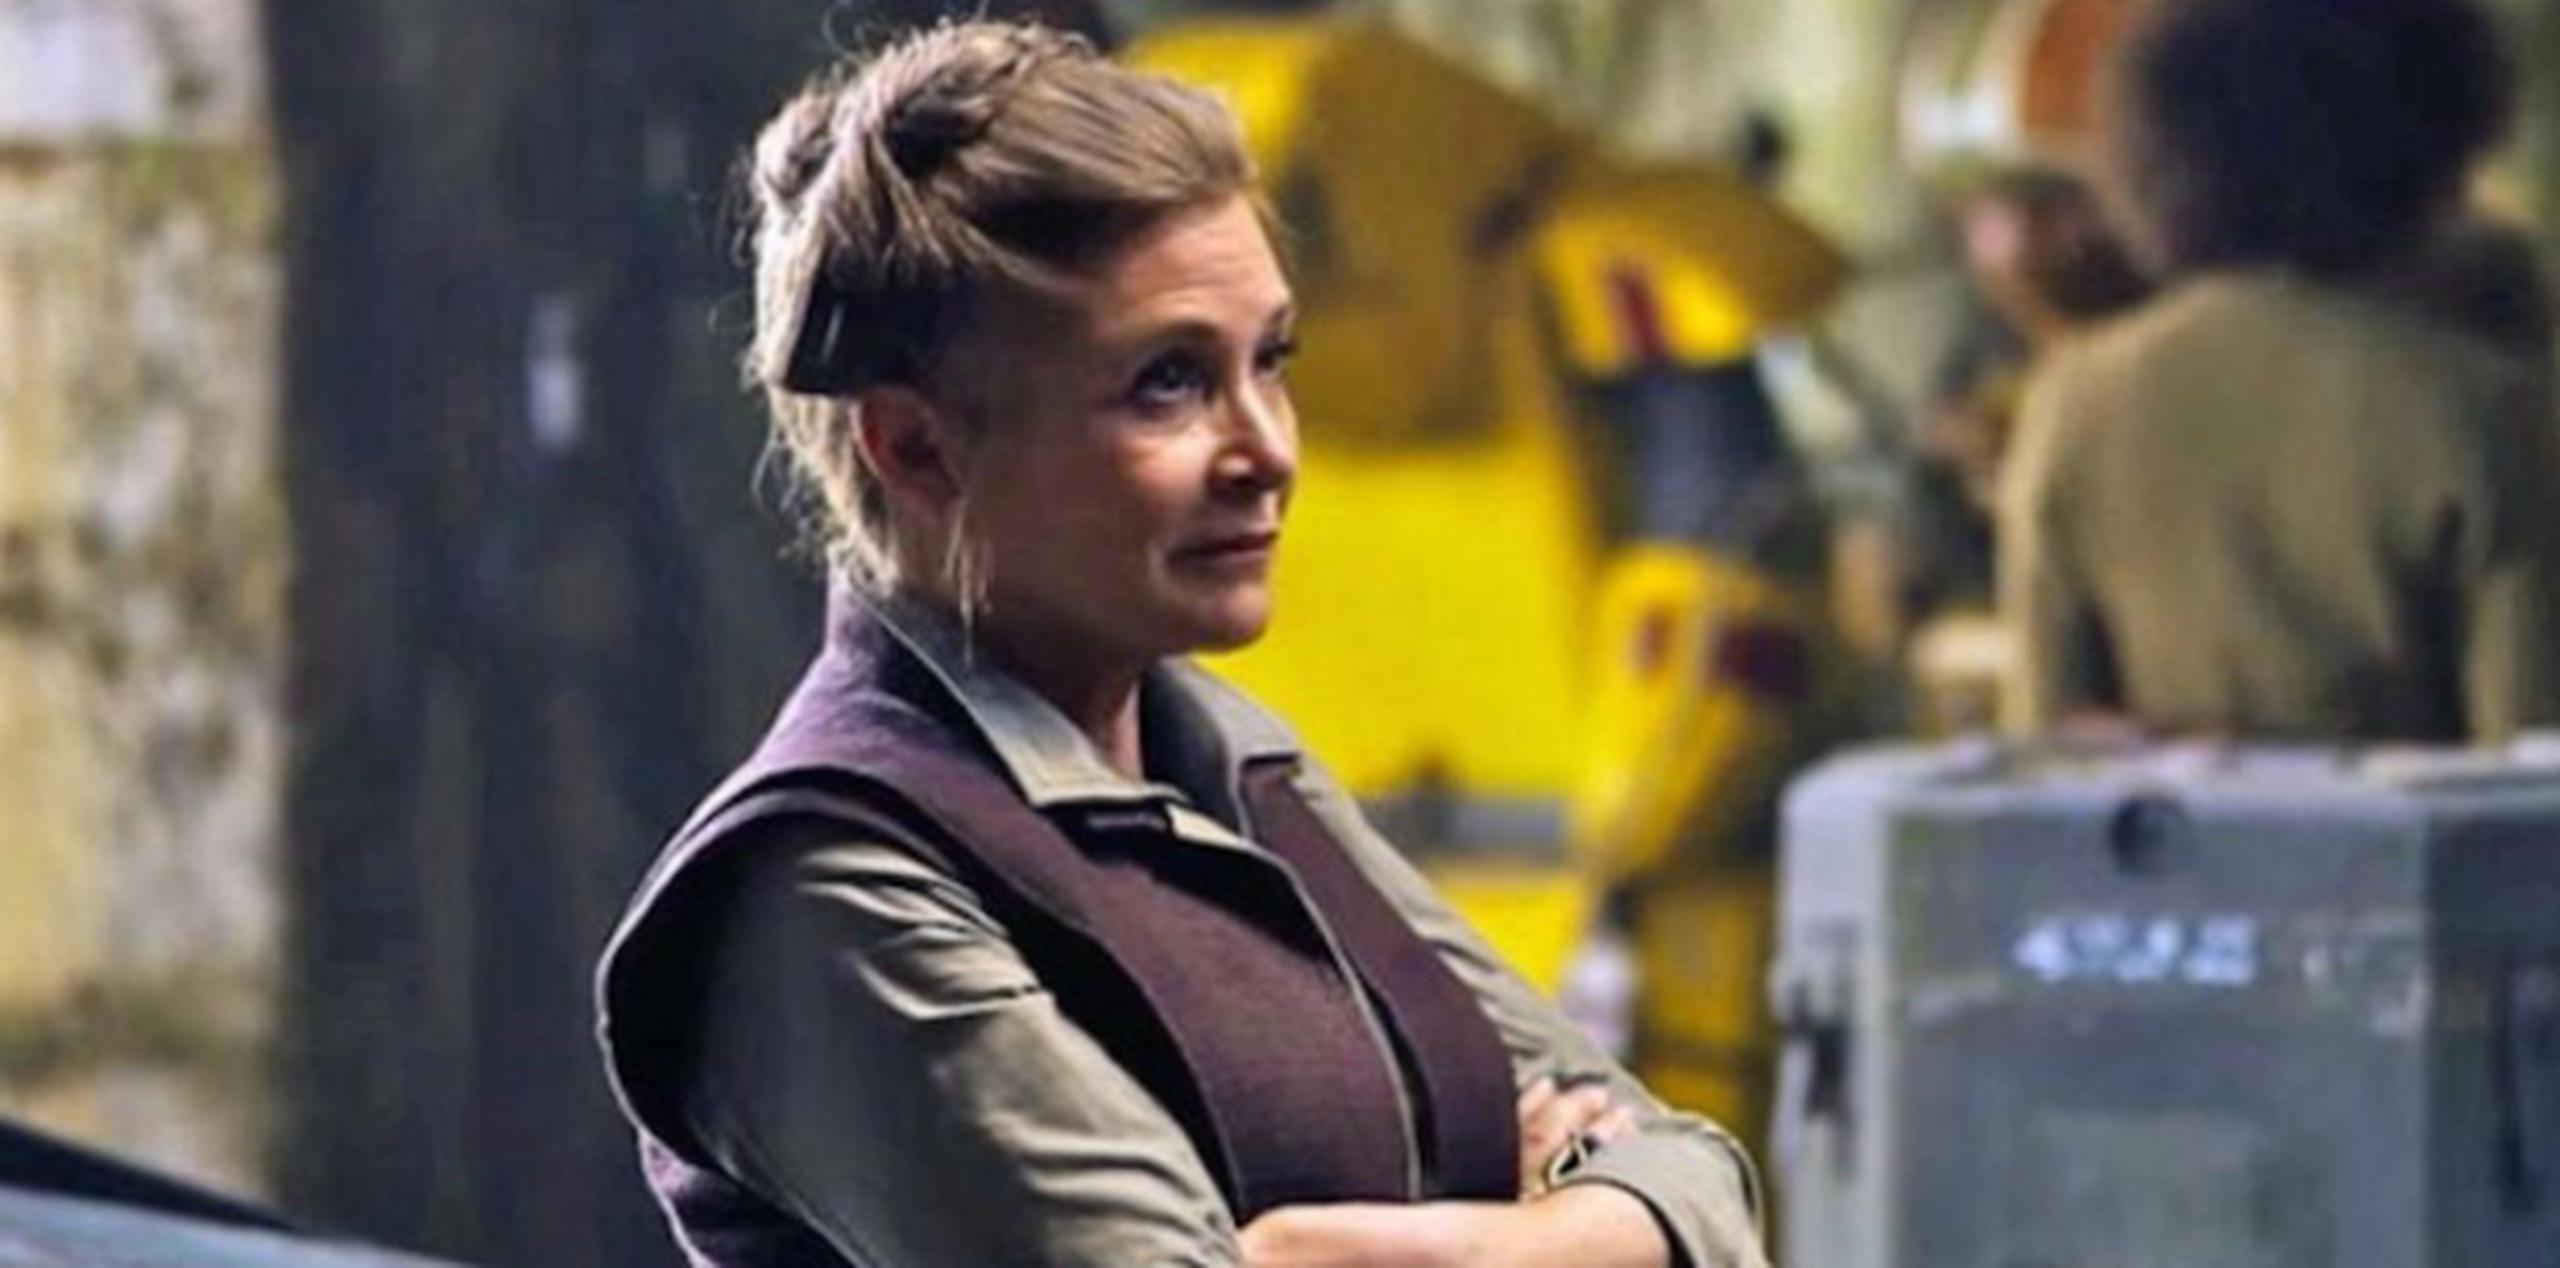 La actriz comentó en julio último detalles de la historia del Episodio VIII, como el funeral de Han Solo (Harrison Ford).